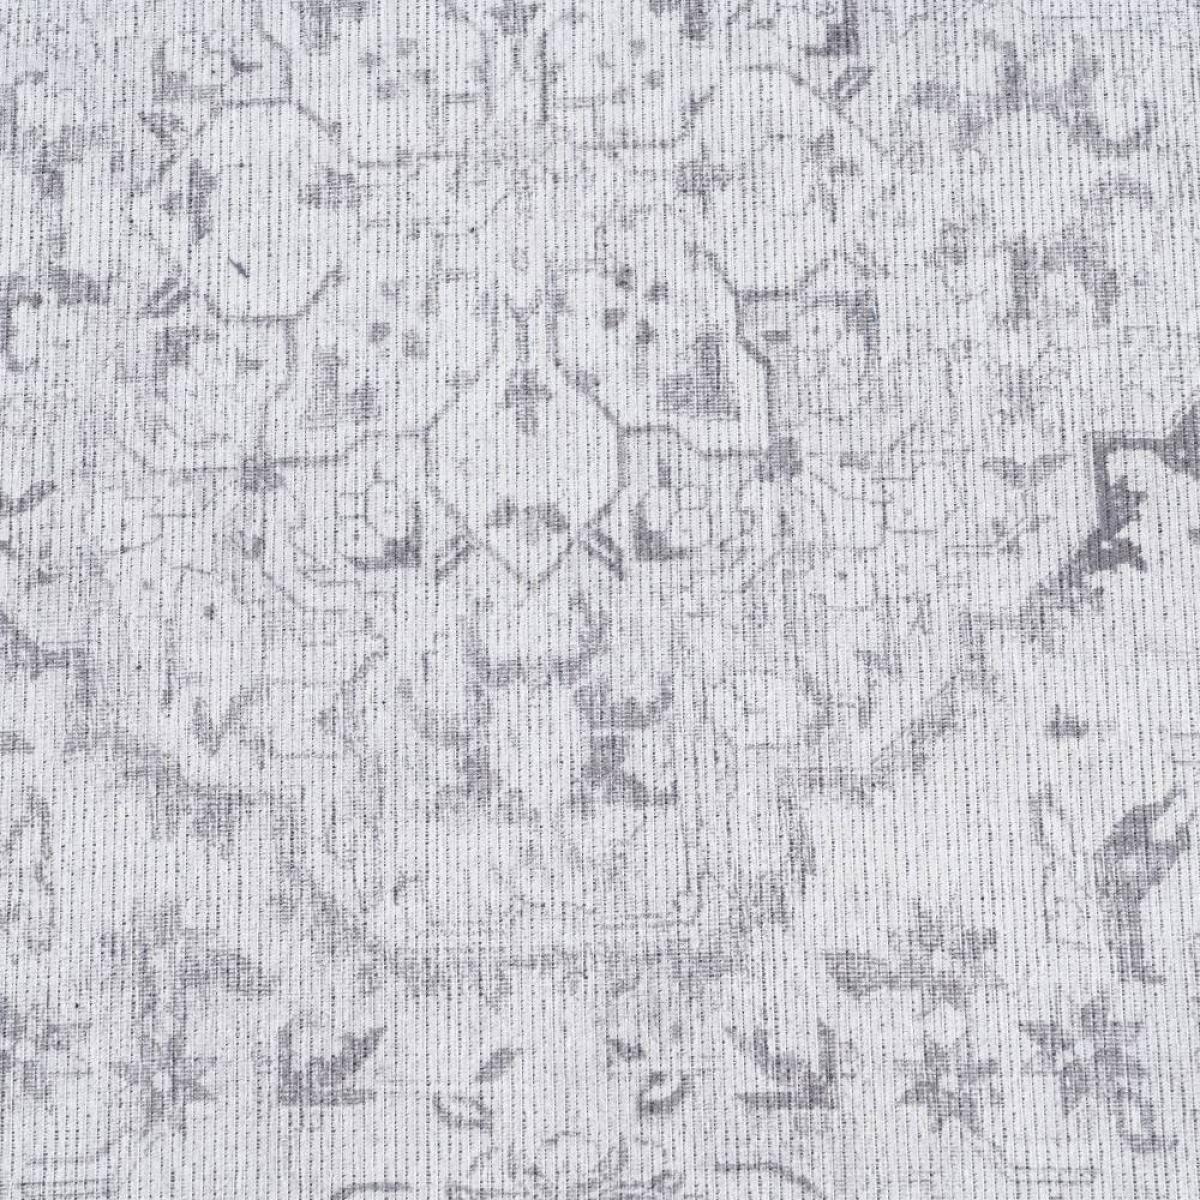 Alfombra gris poliester-algodón 160 x 230 cm 310608445